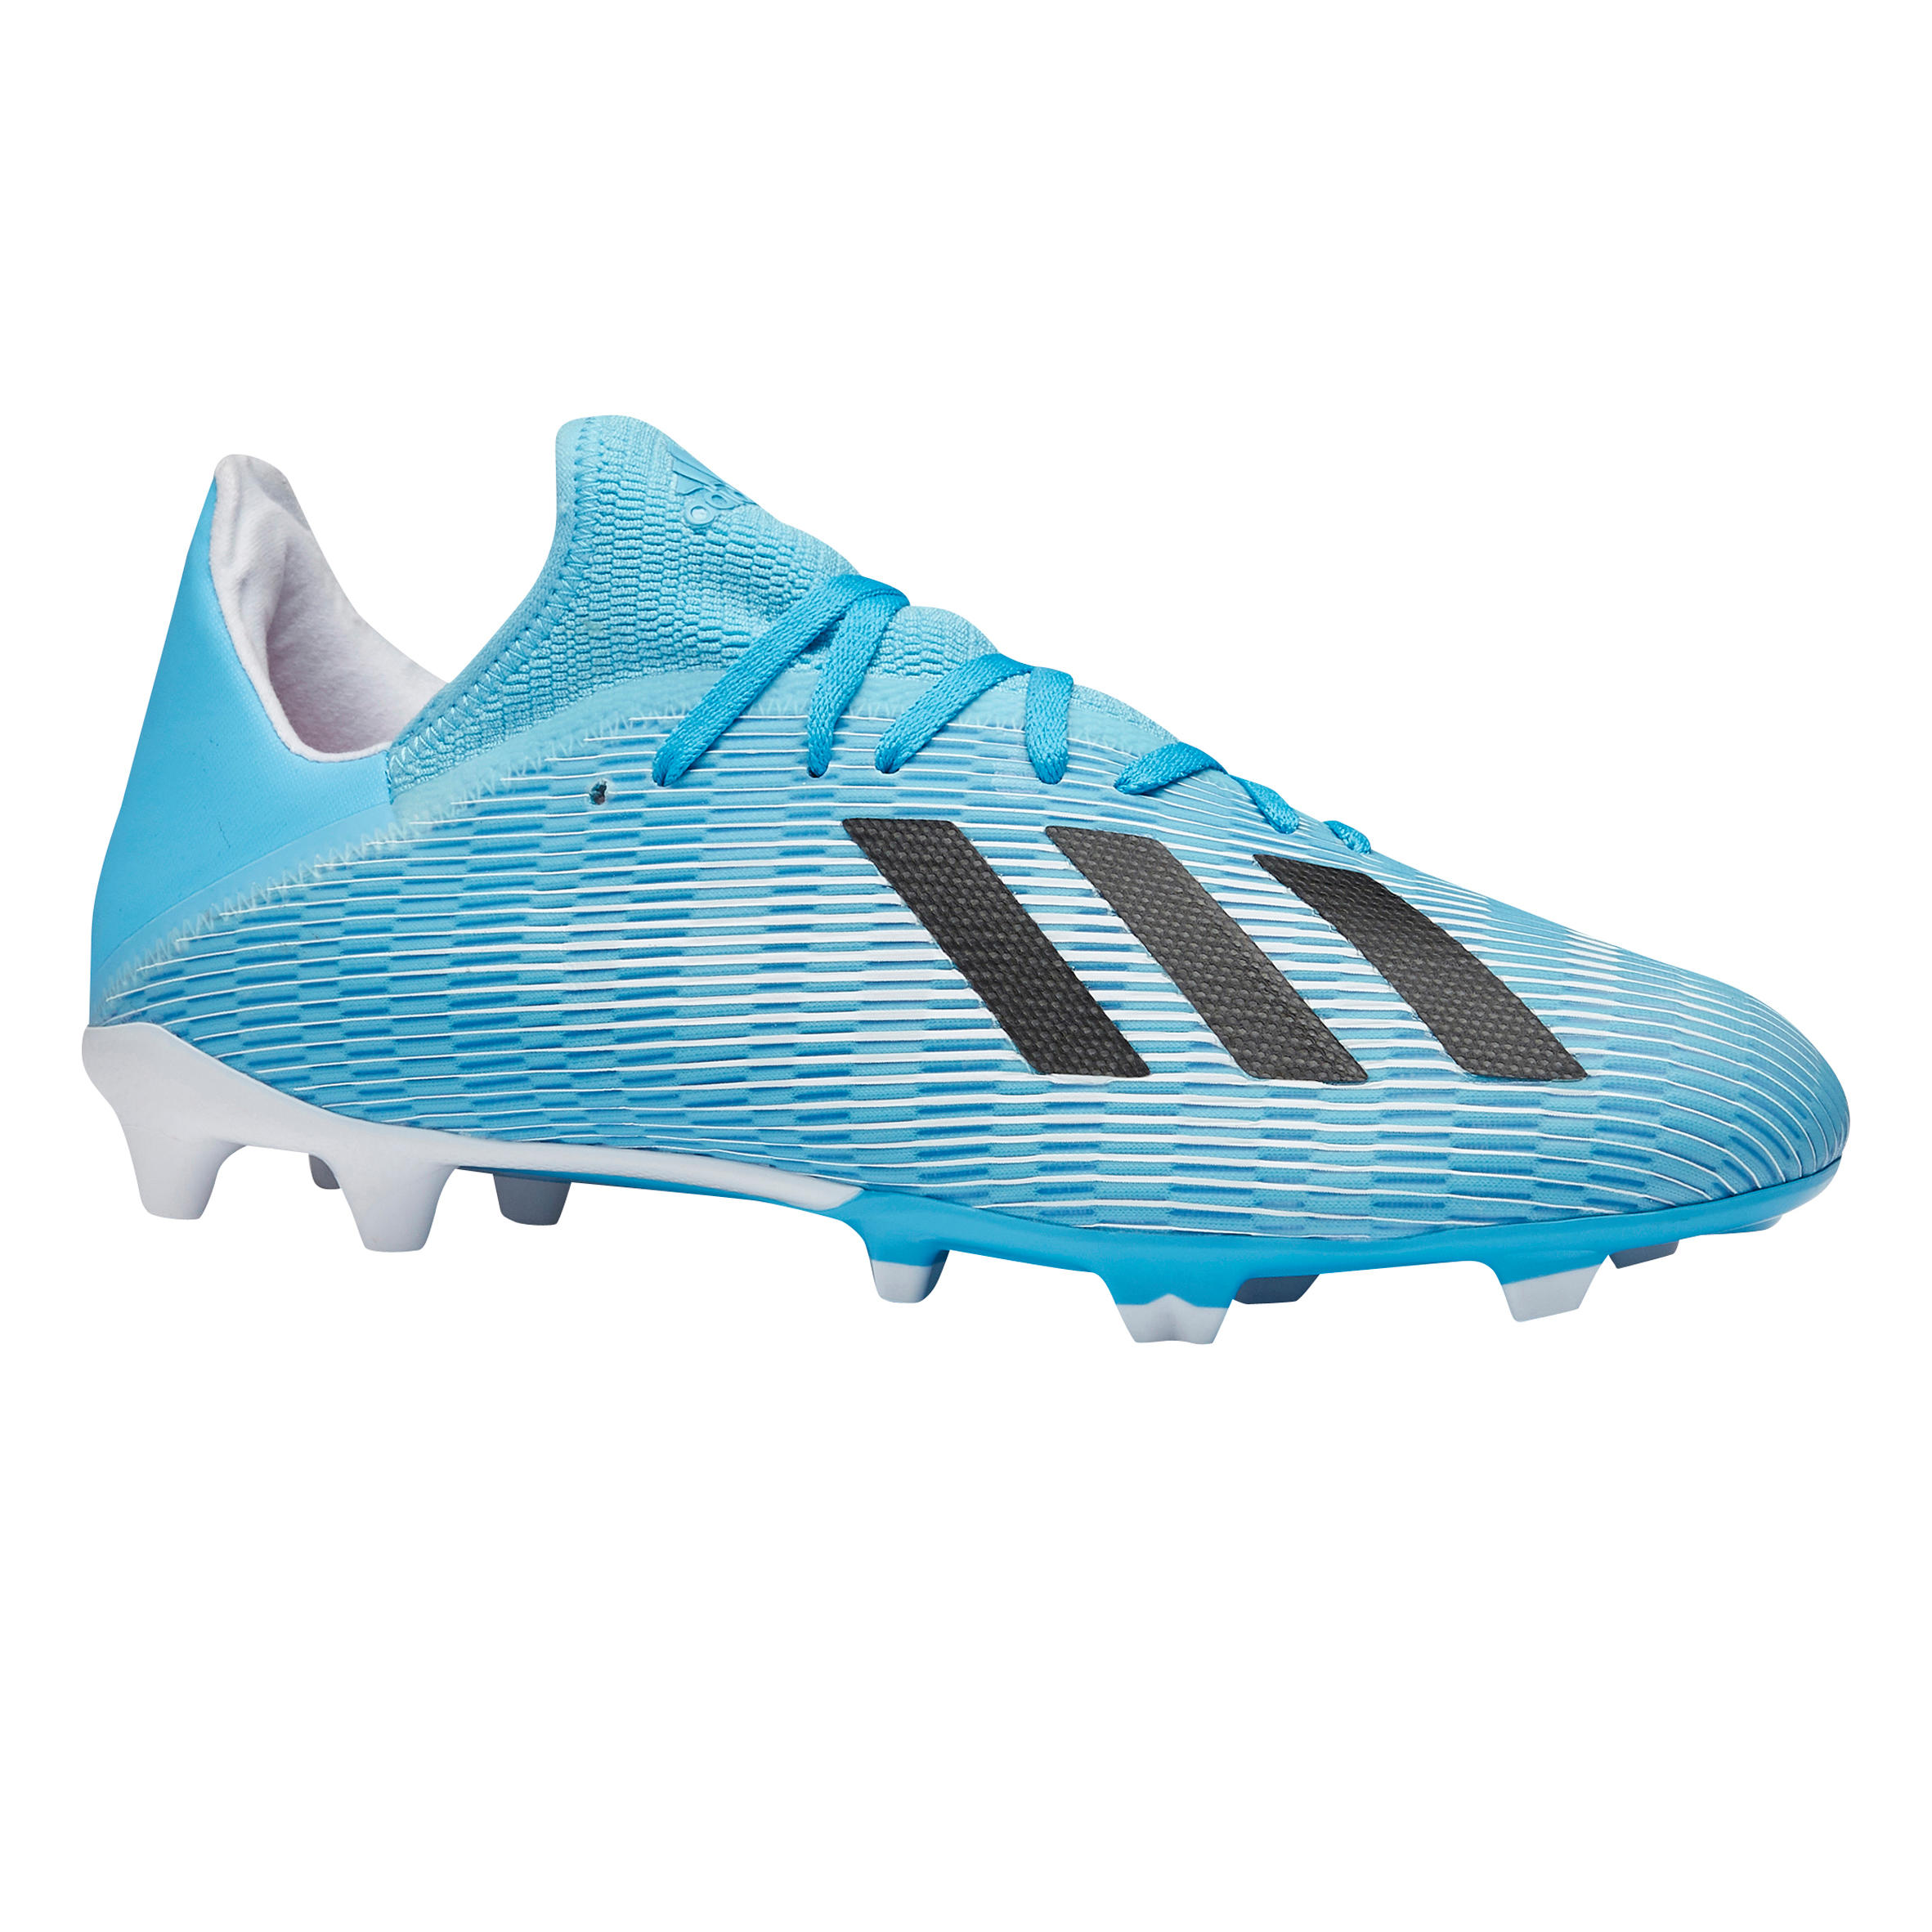 Chaussure de football adulte X 19.3 Adidas FG bleu